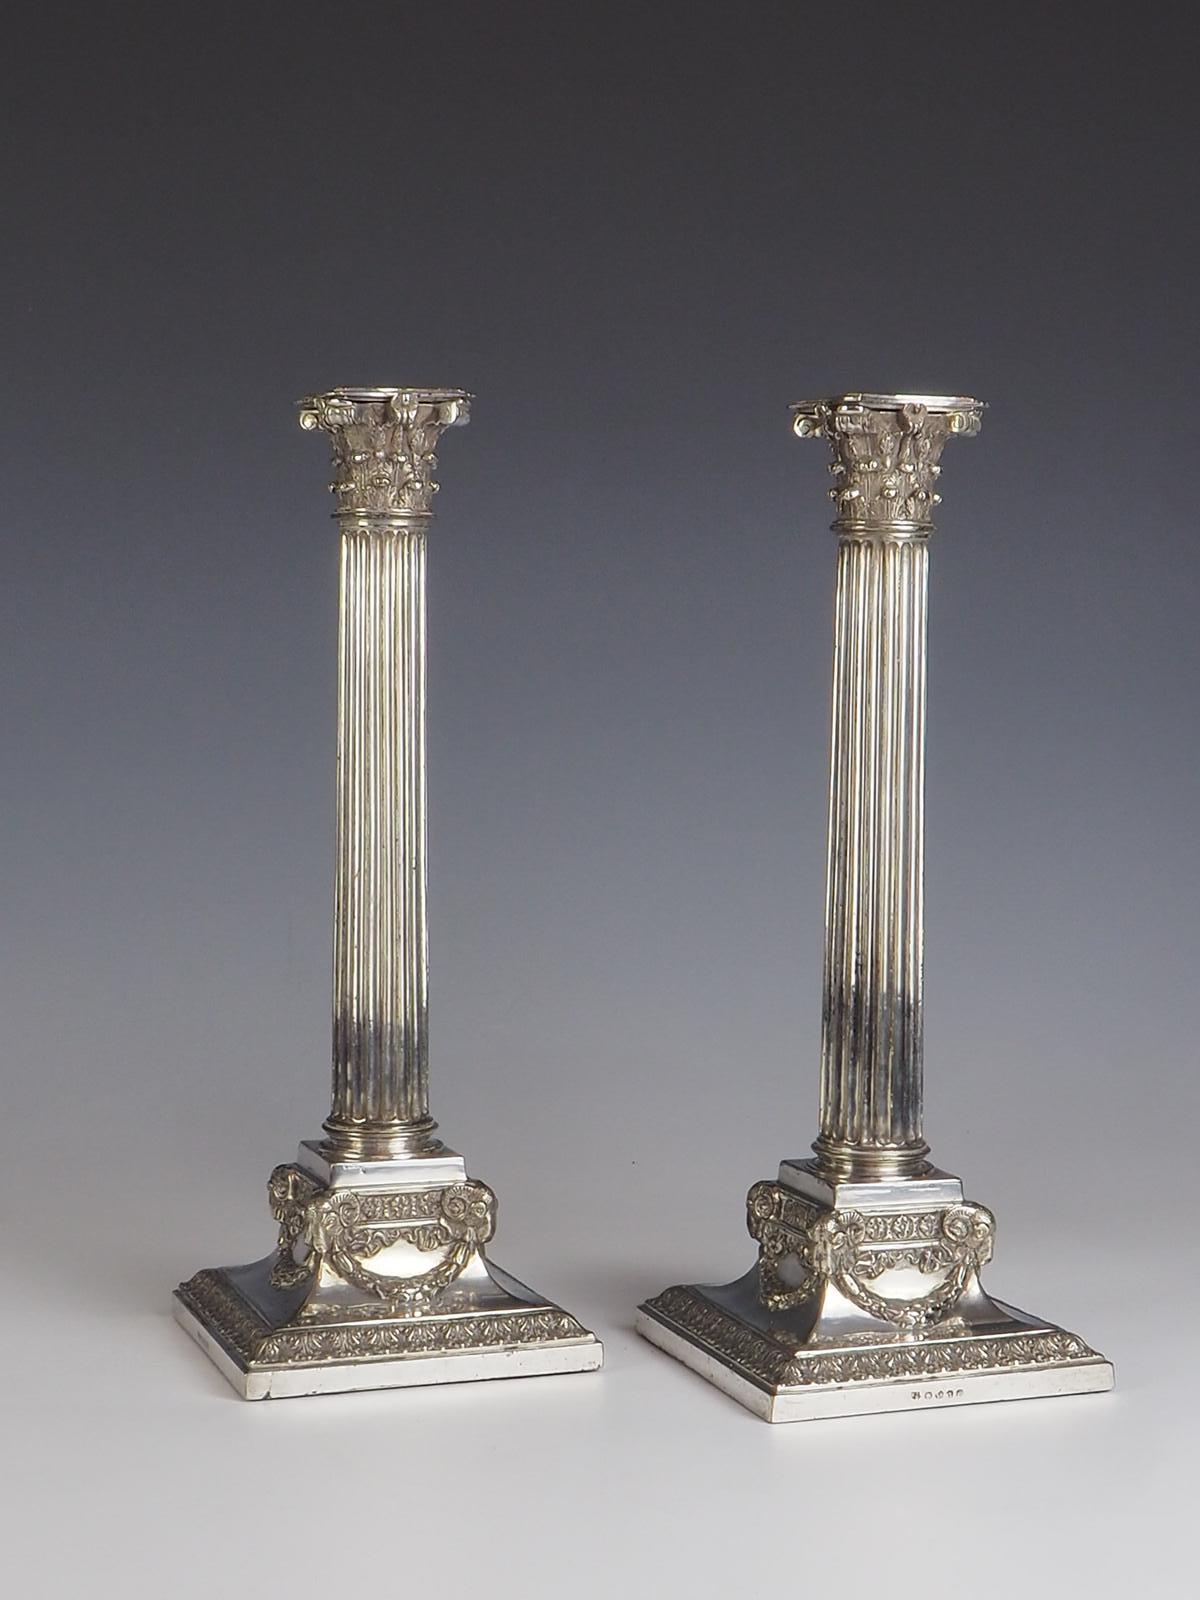 Lassen Sie sich von der zeitlosen Eleganz dieses exquisiten Paars versilberter Kerzenhalter von Martin Hall & Co. aus der Zeit um 1890 verzaubern. Diese Kerzenständer sind ein Zeugnis für die tadellose Handwerkskunst der damaligen Zeit und bestechen